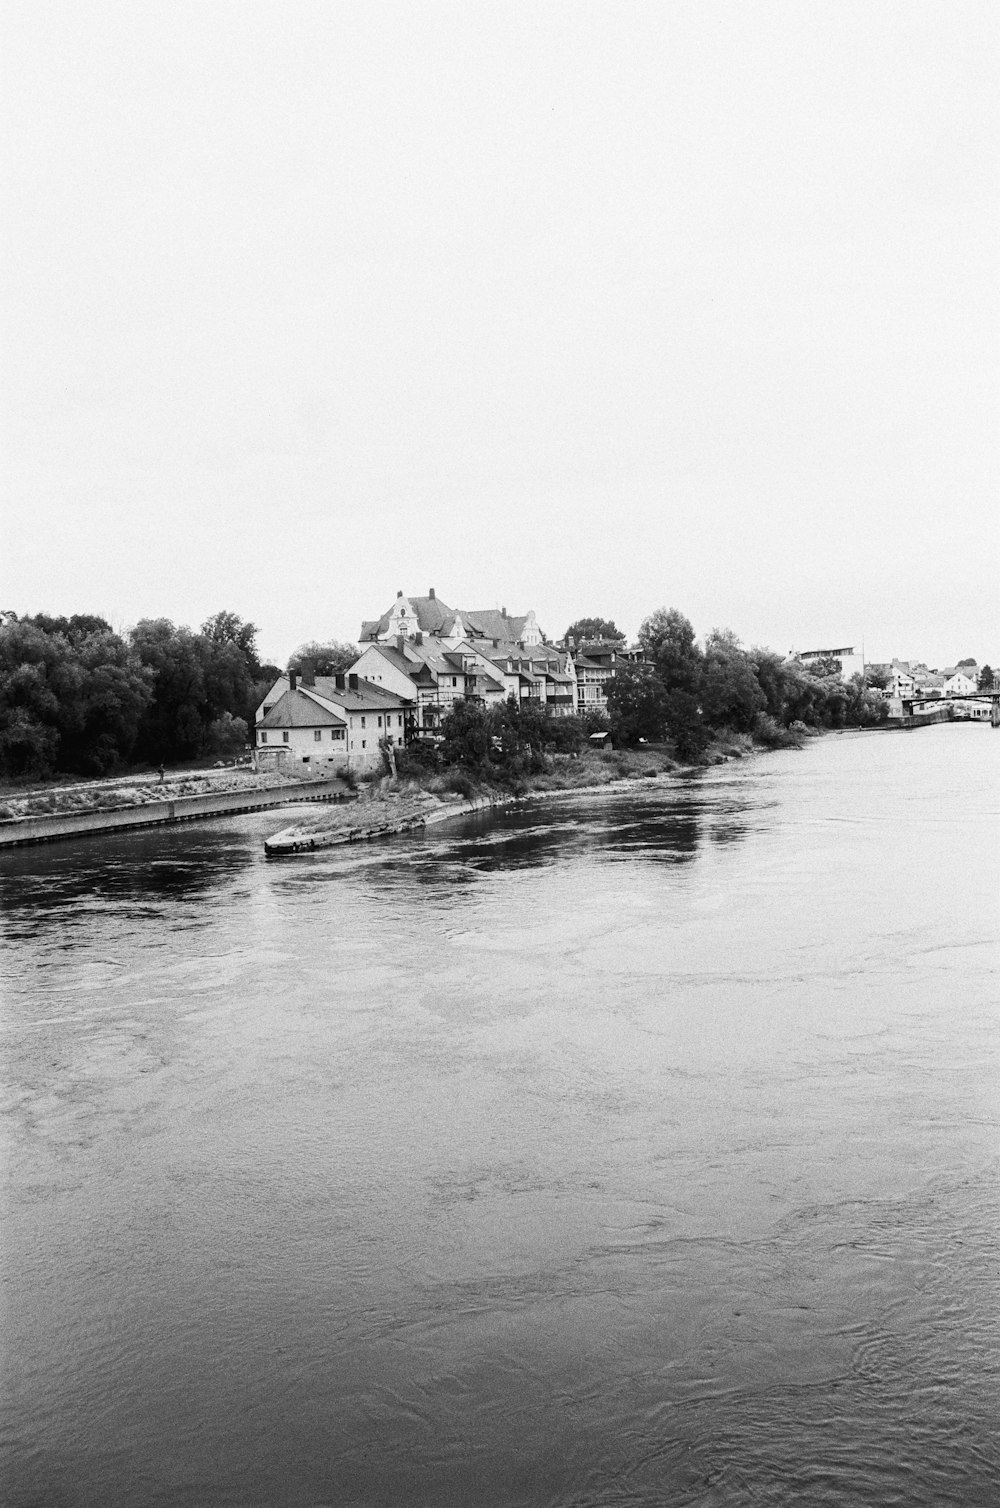 Foto in scala di grigi di case accanto al fiume